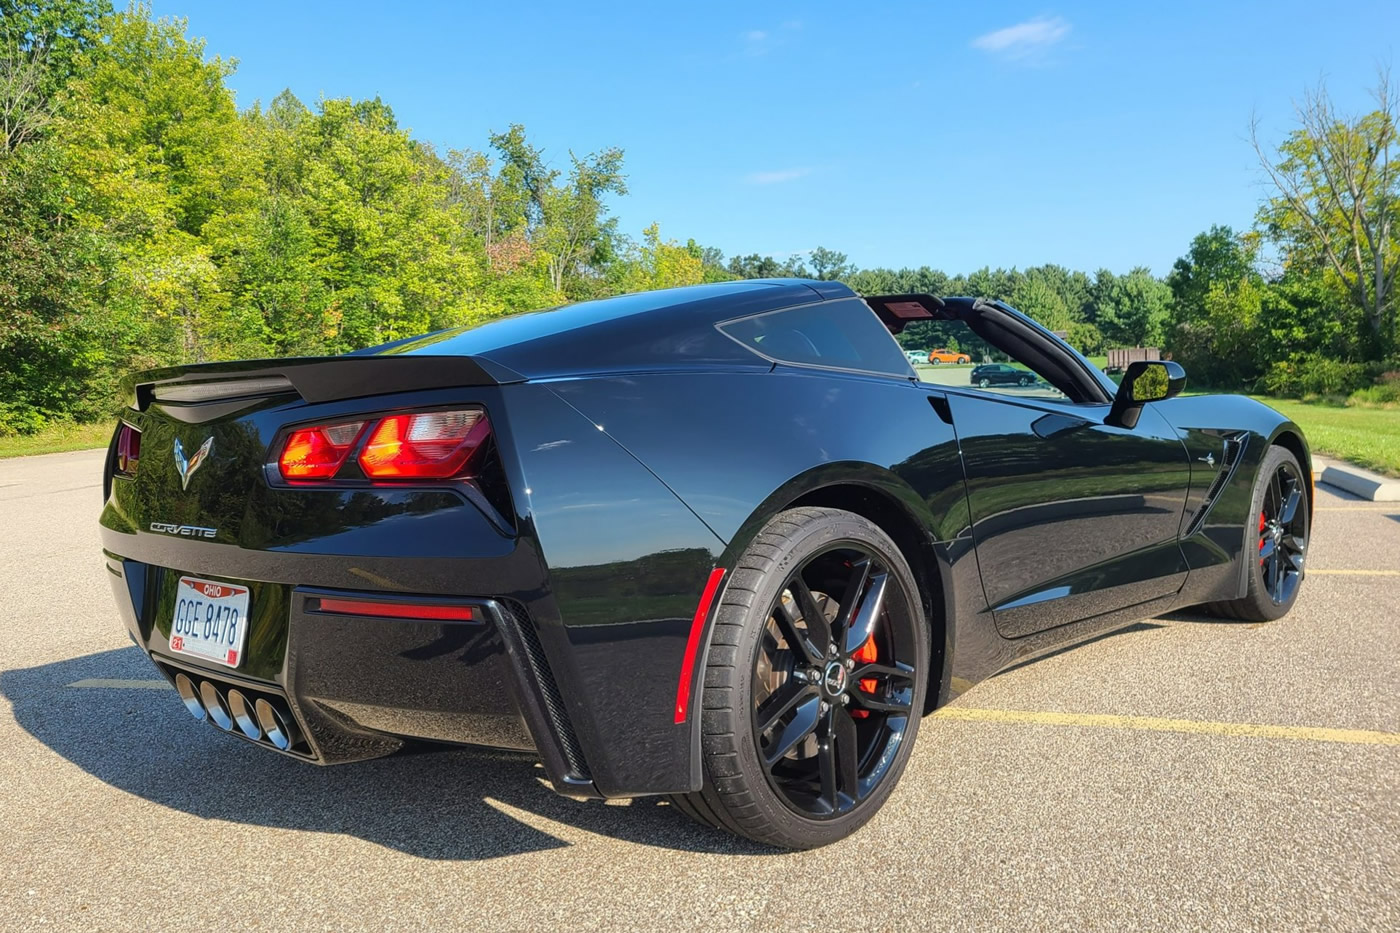 2014 Corvette Stingray Z51 in Black